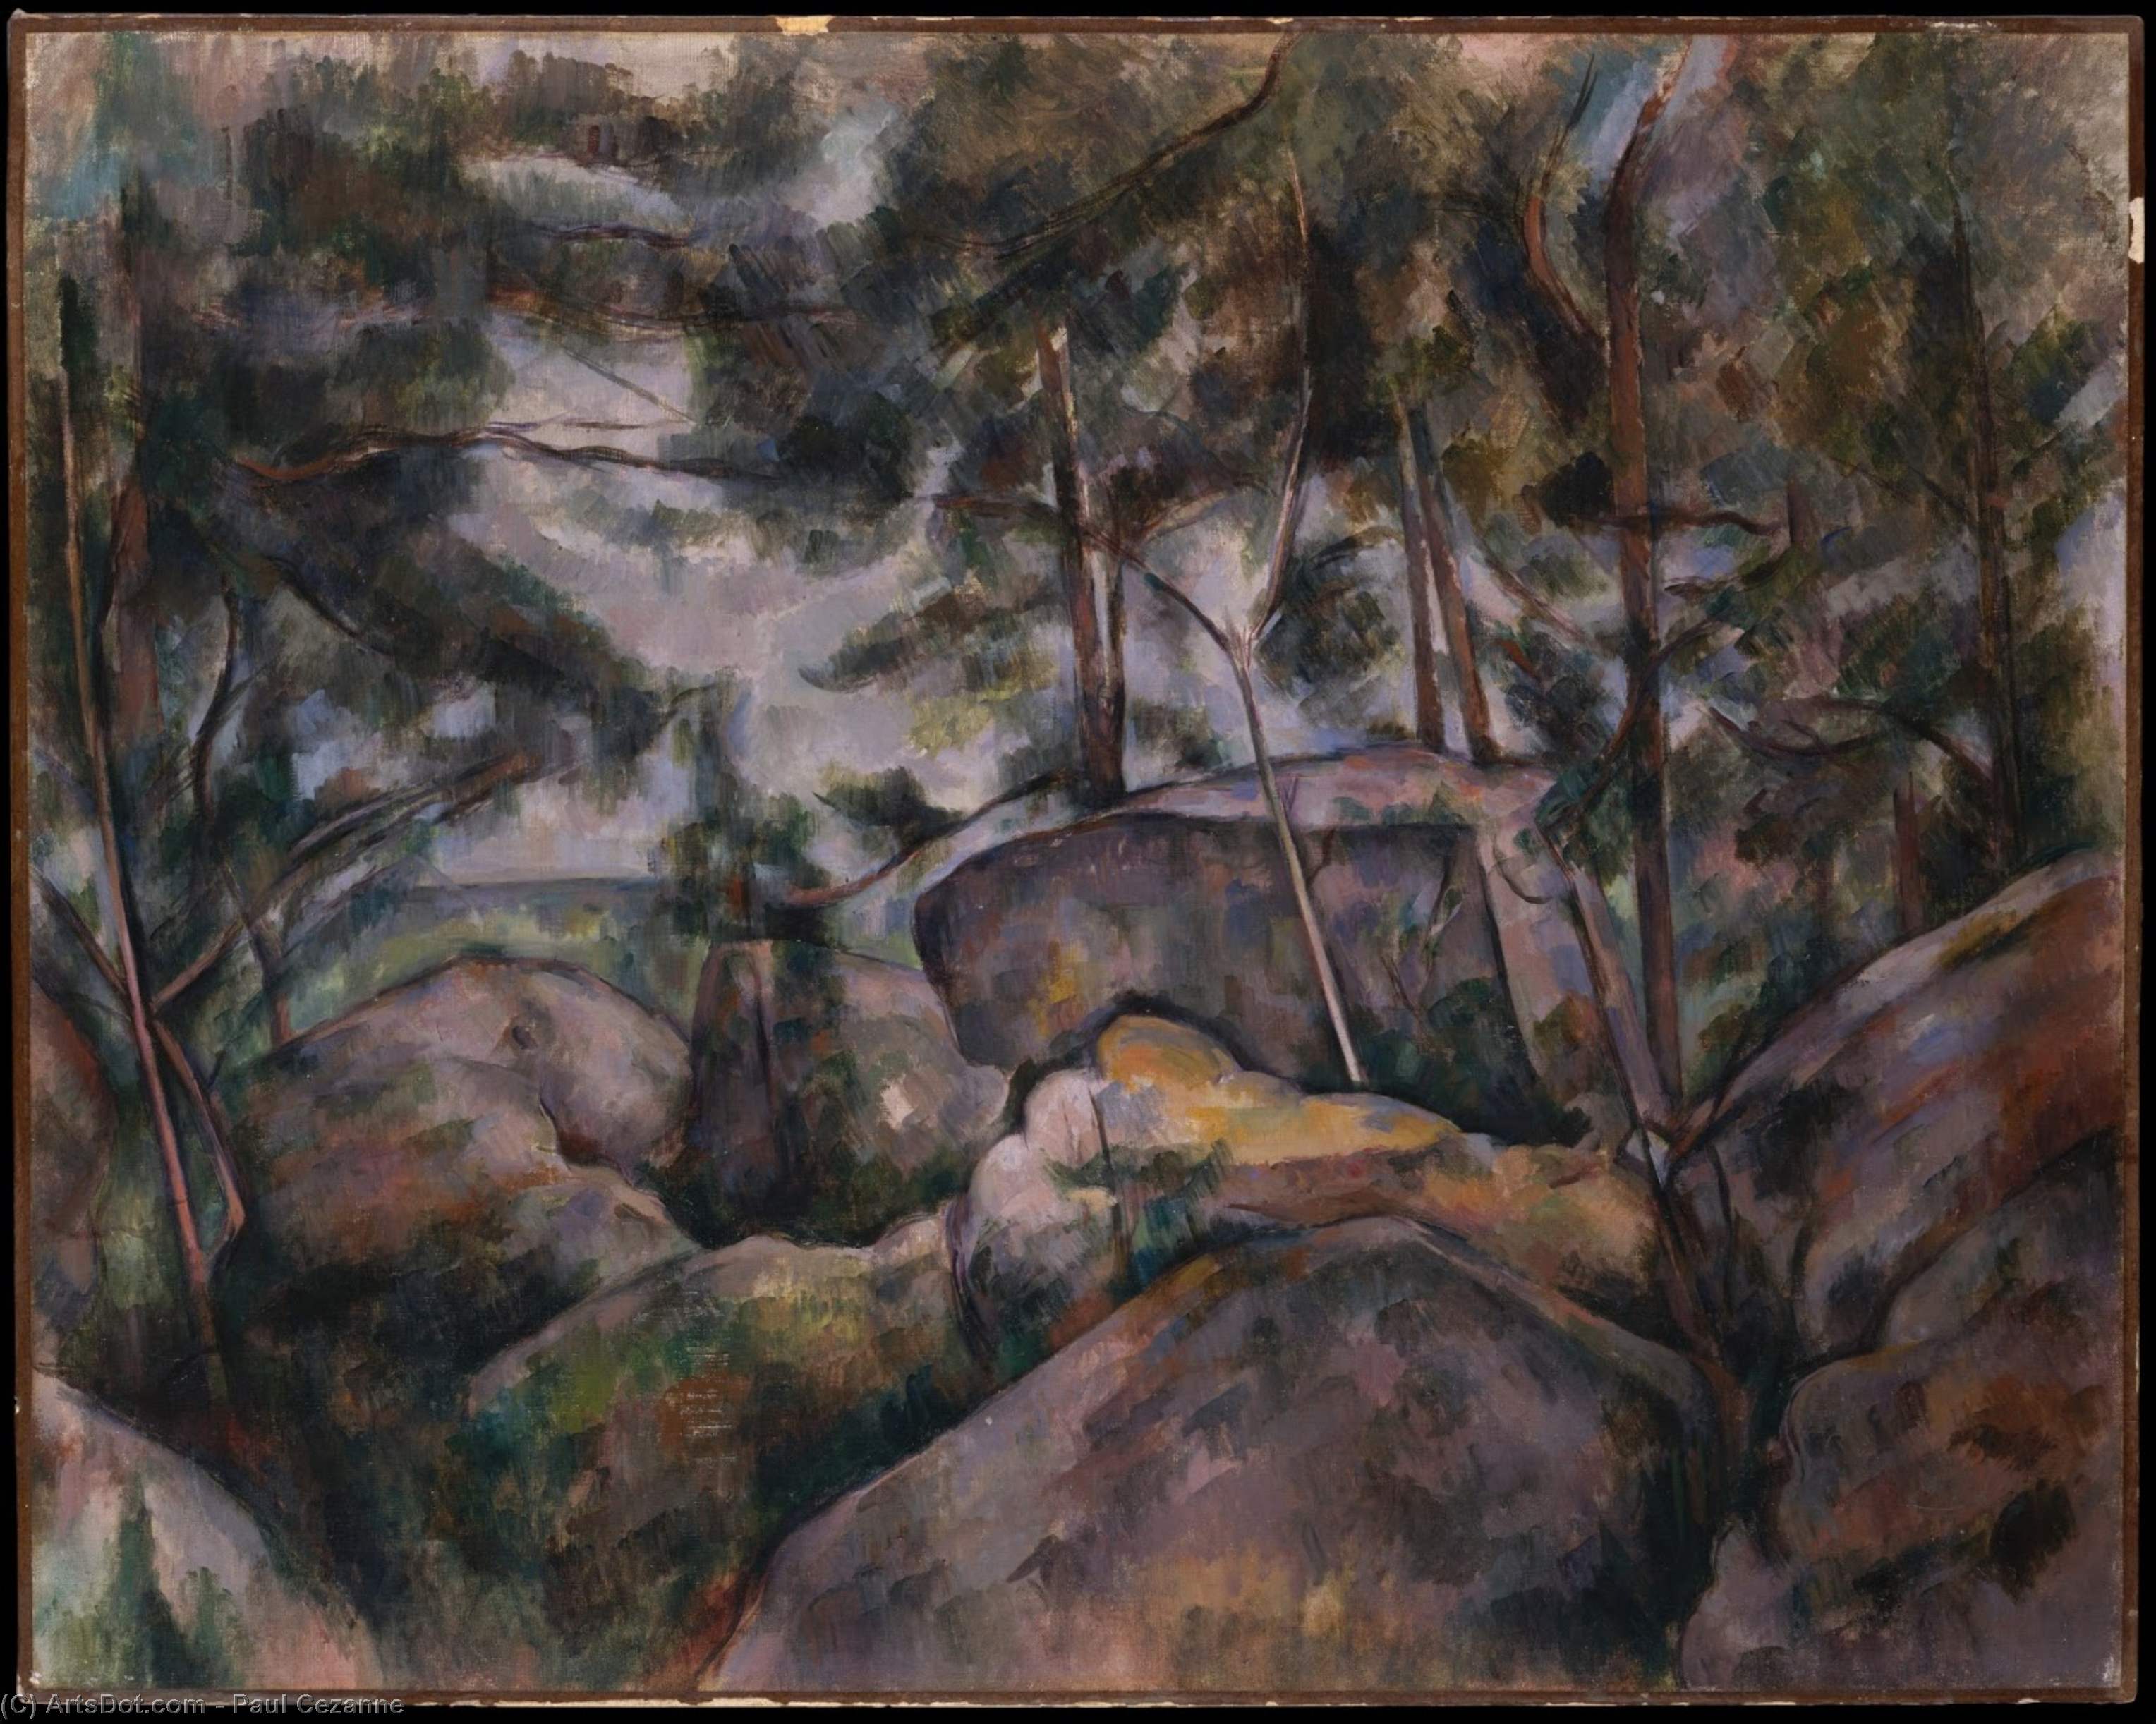 WikiOO.org - Encyclopedia of Fine Arts - Maleri, Artwork Paul Cezanne - Rocks in the Forest